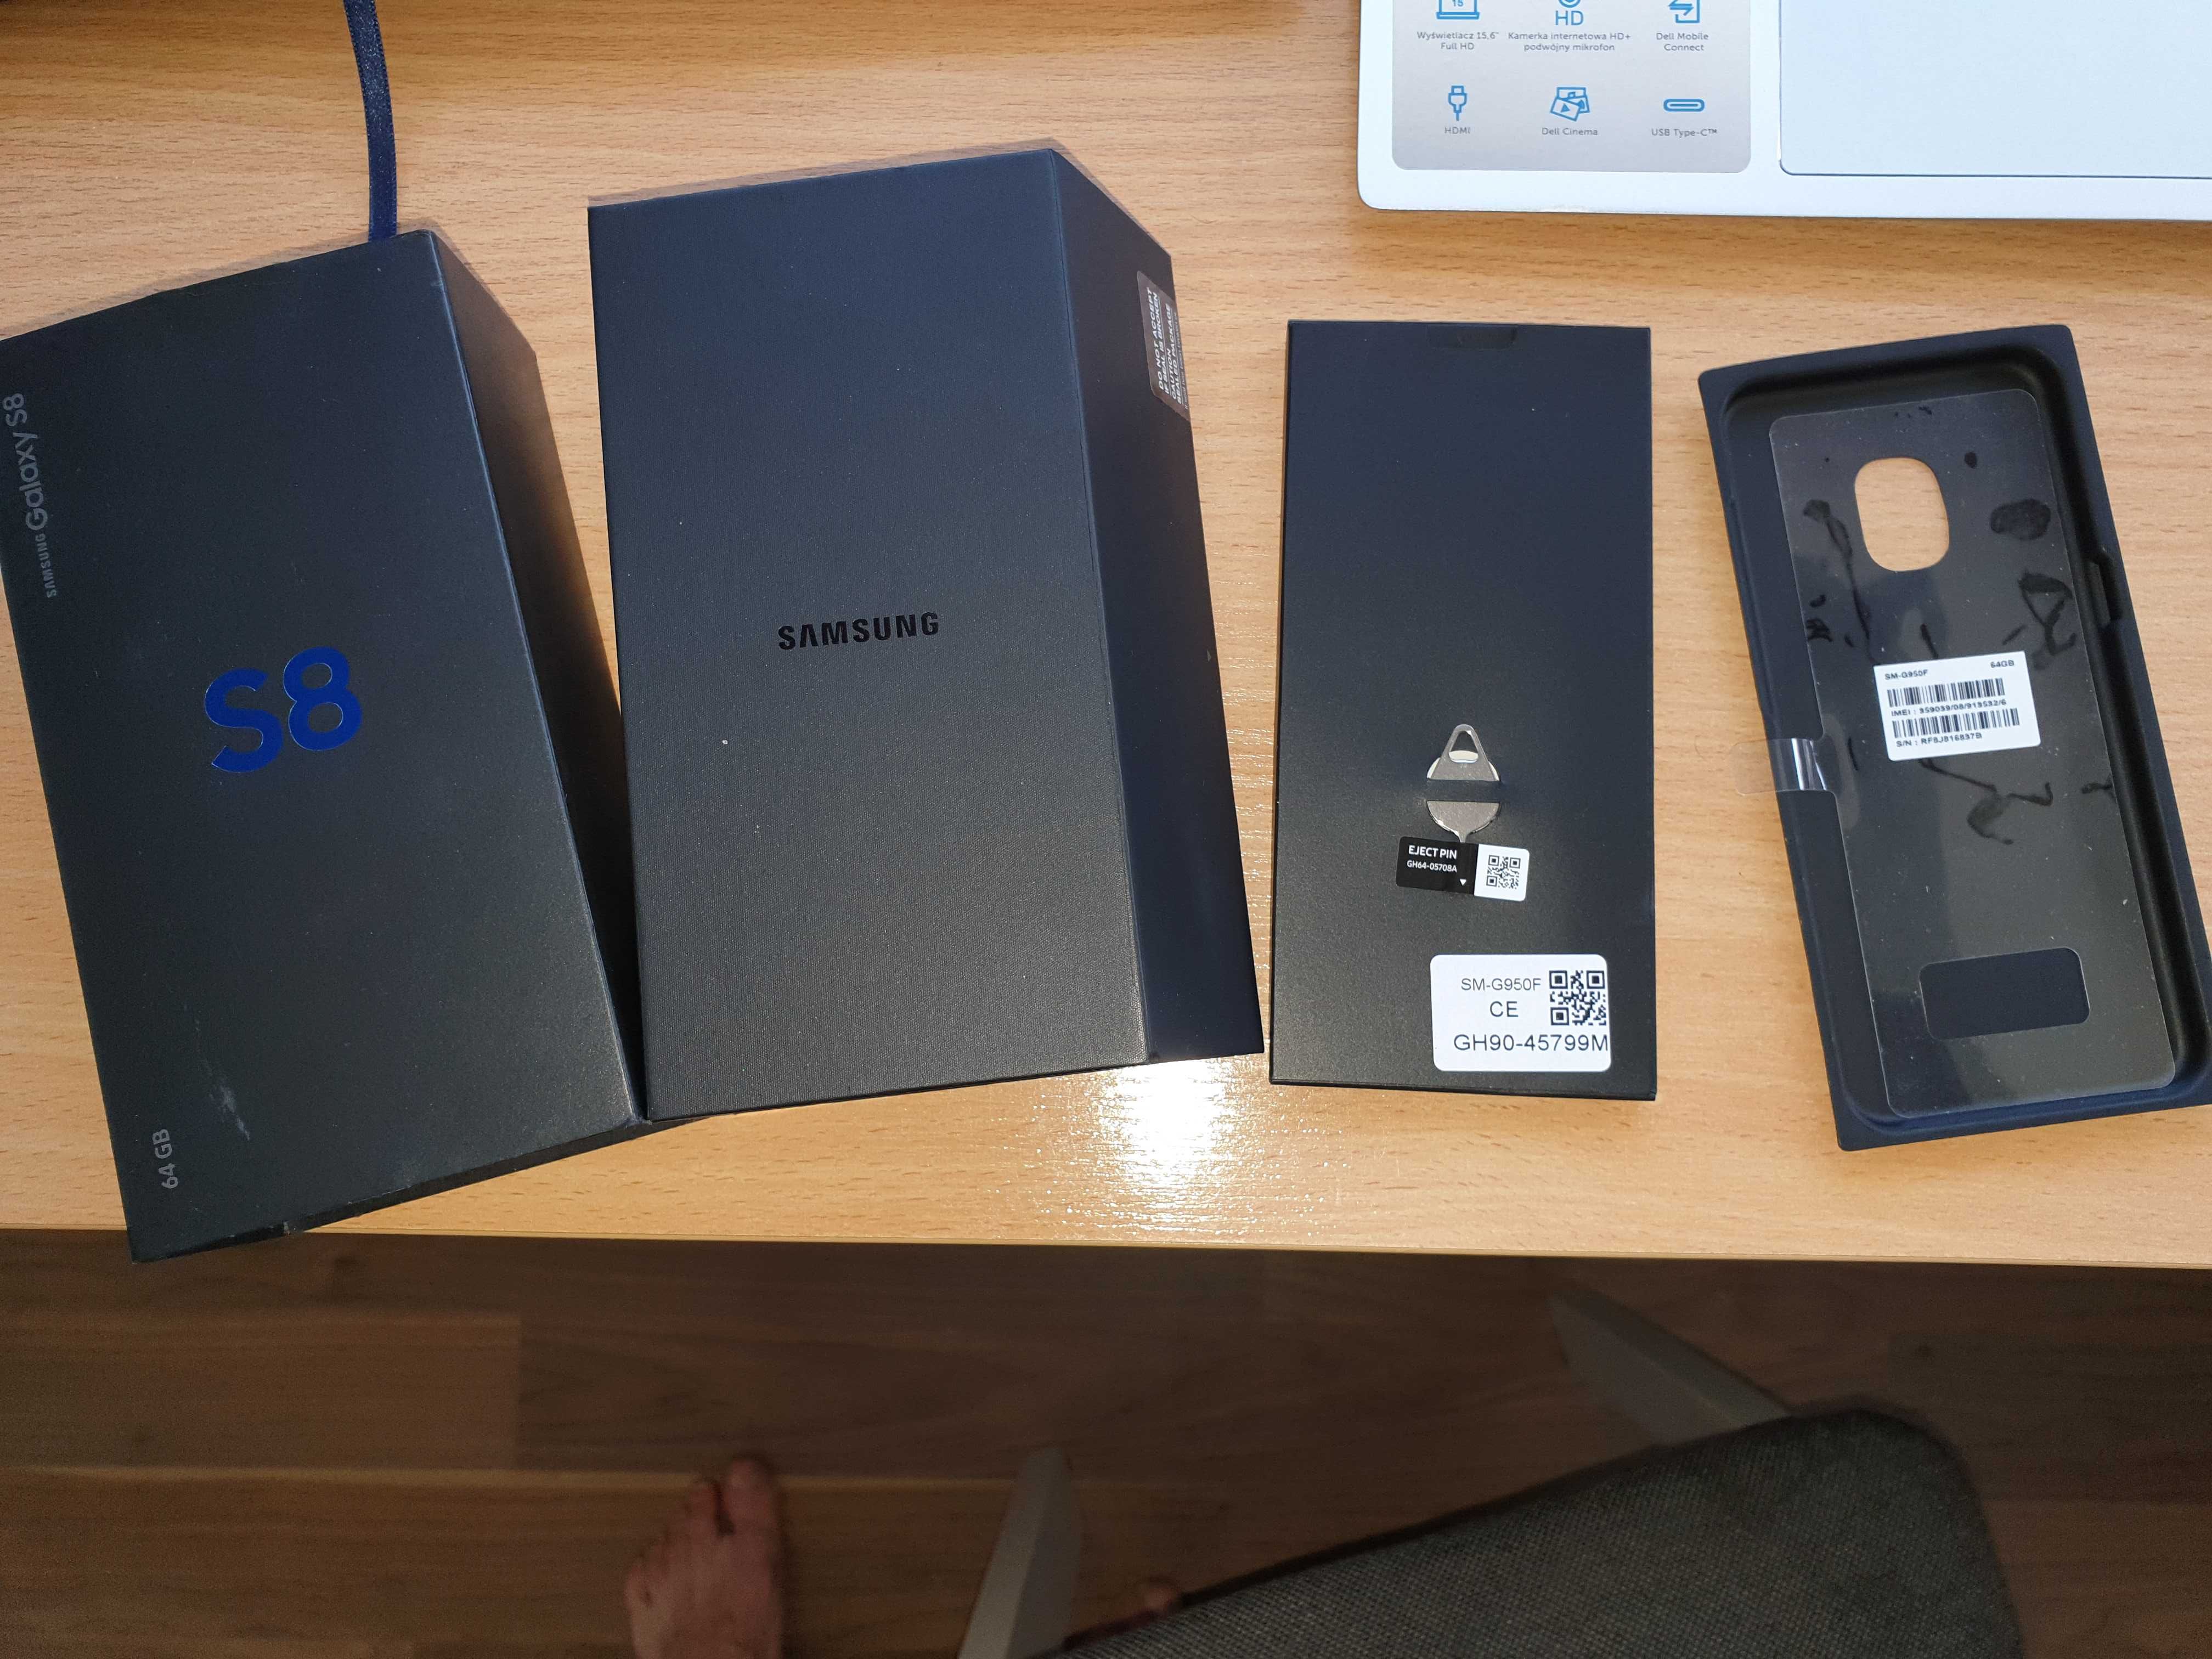 Pudełko kartonik opakowanie Samsung S8 Kompletne